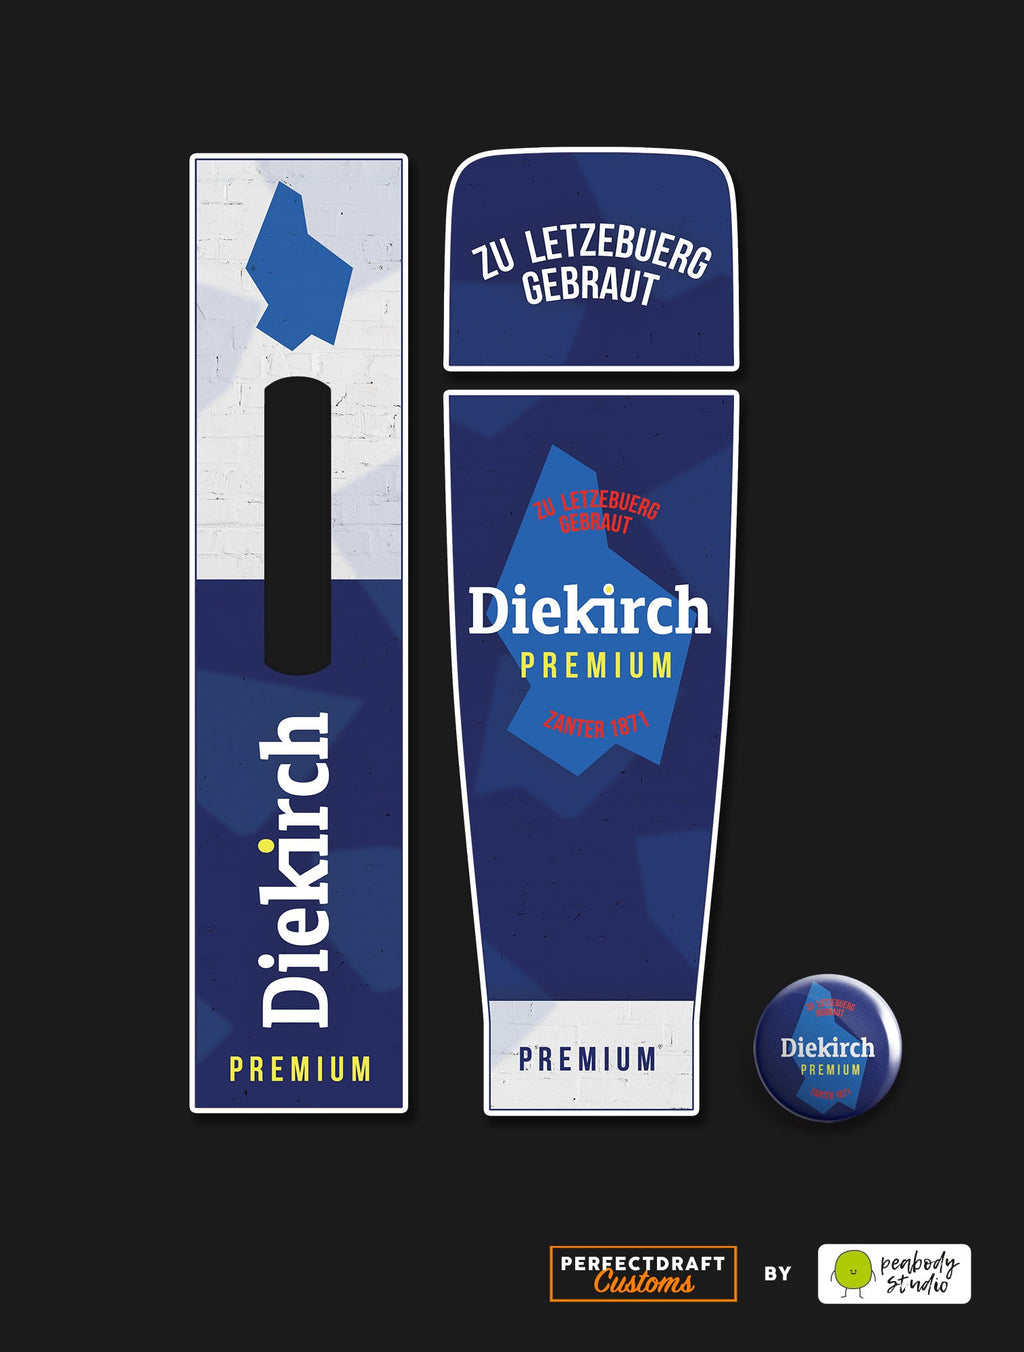 Diekirch Premium 2020 Perfect Draft Skin